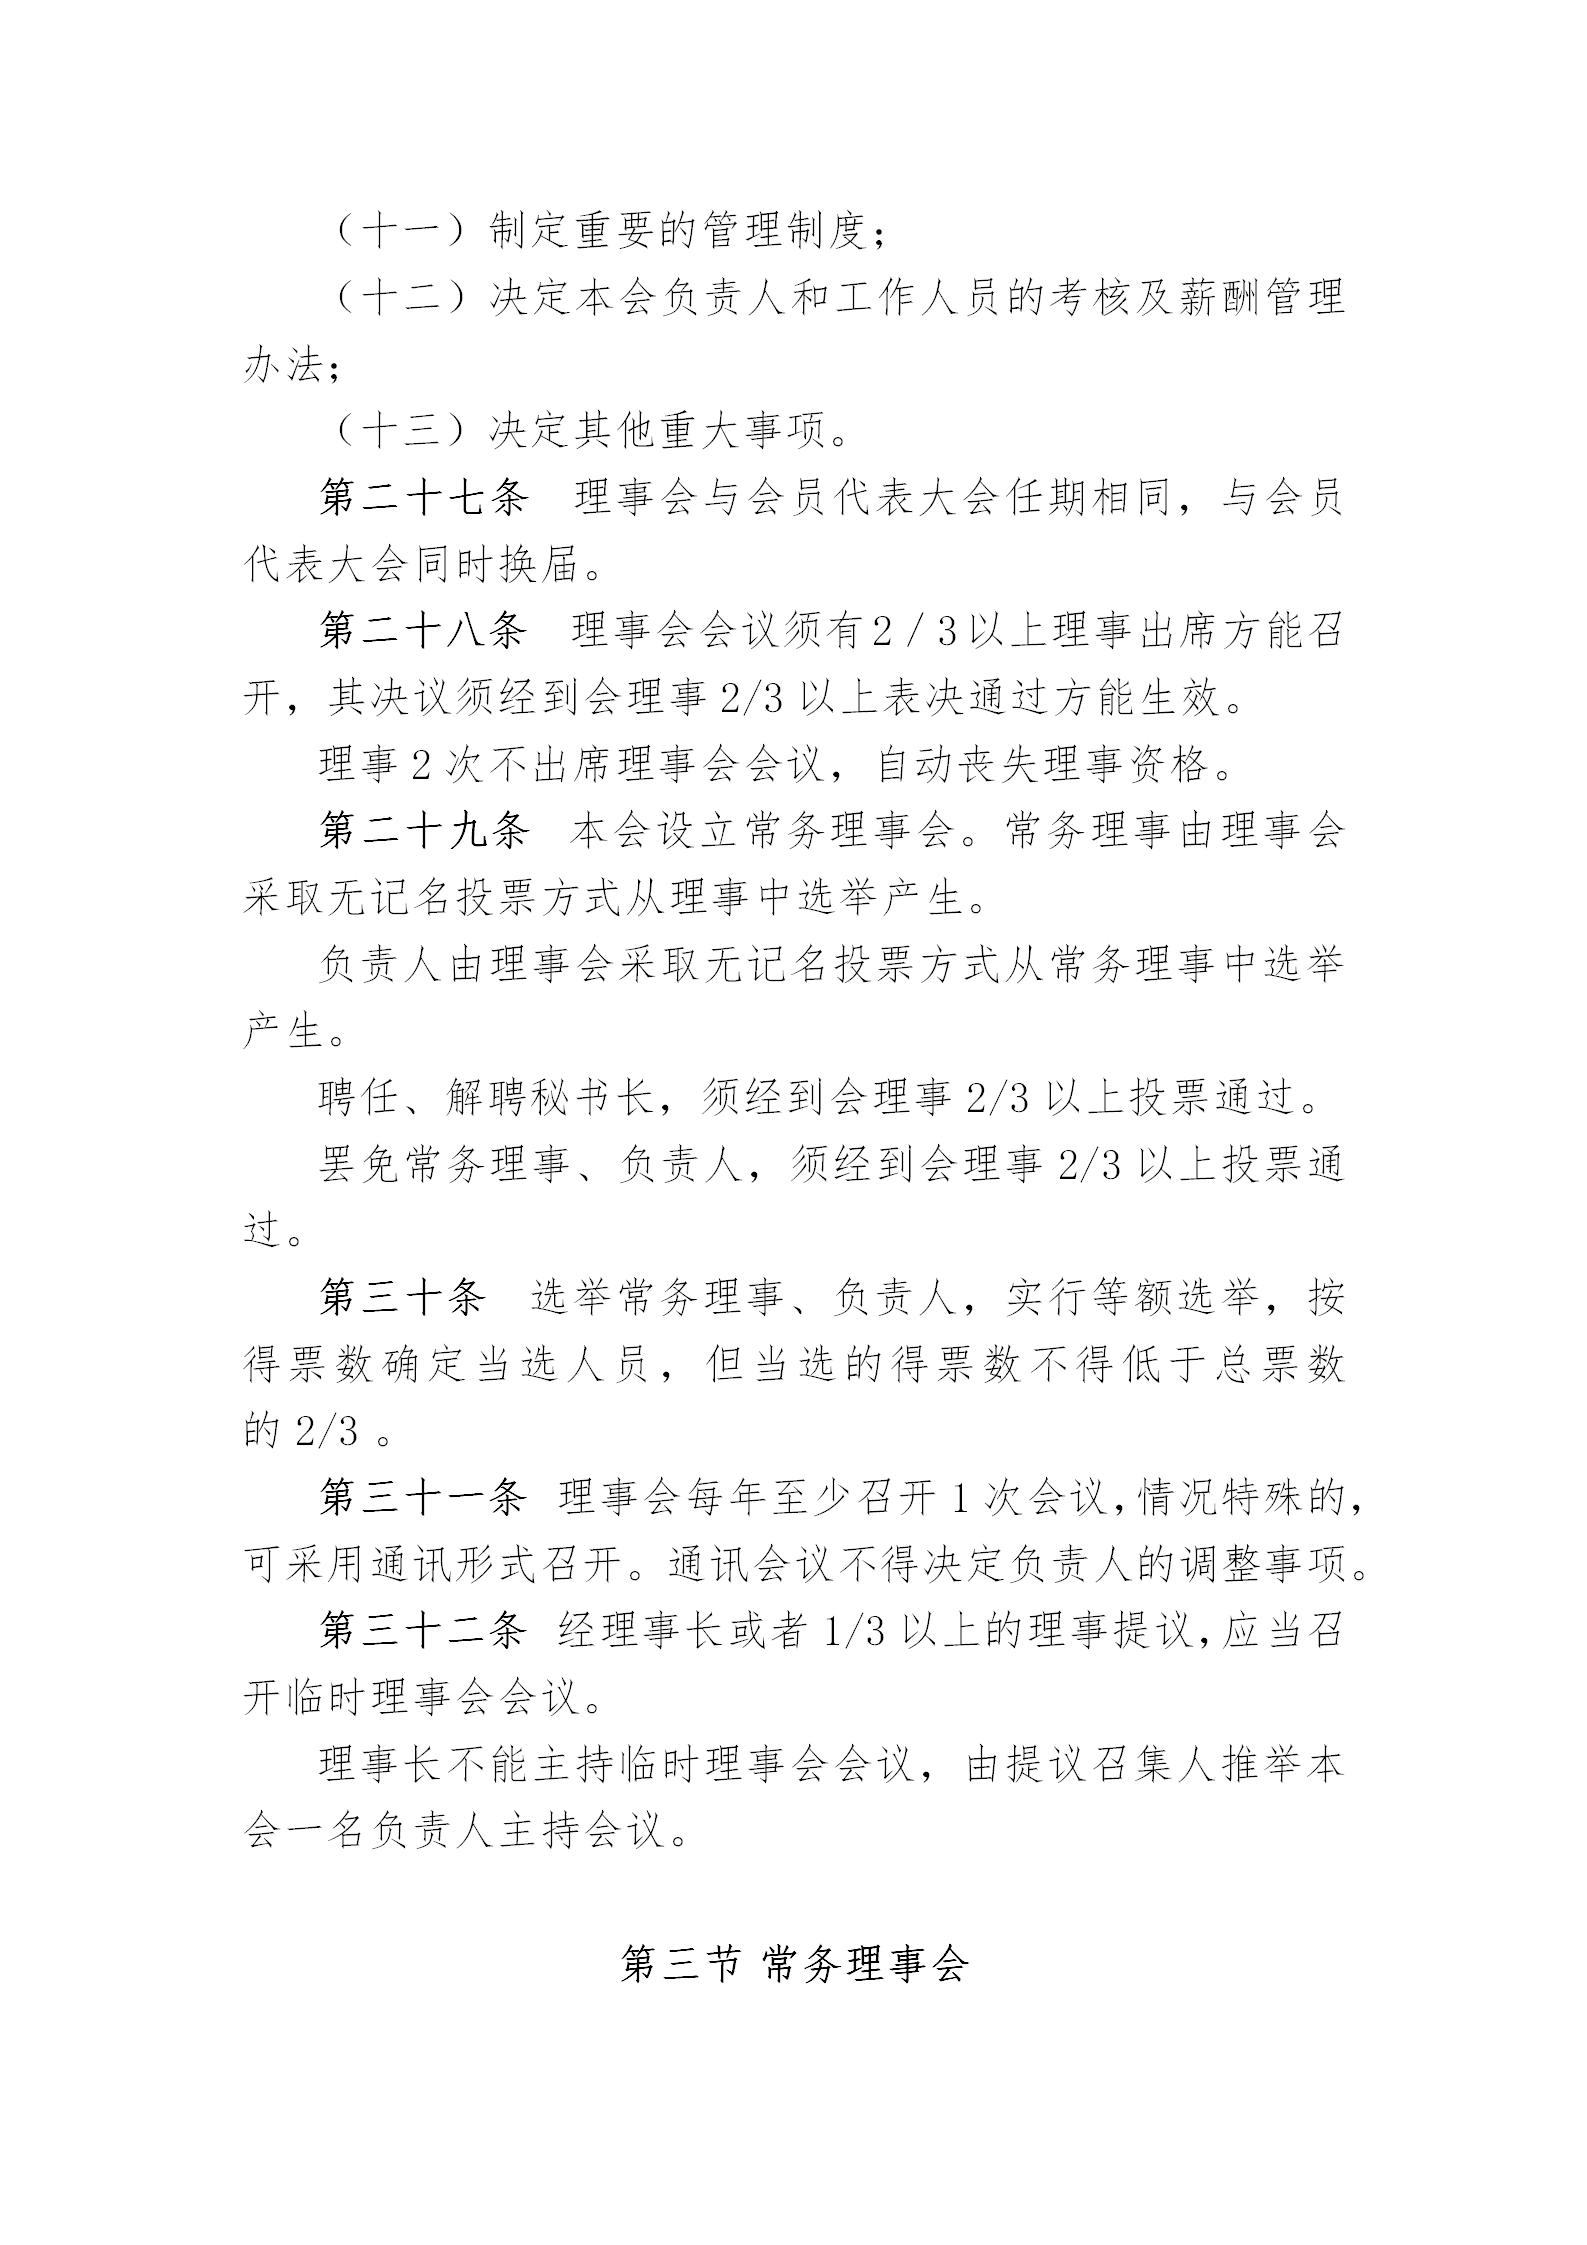 中国演艺设备技术协会章程(定稿)_09.jpg